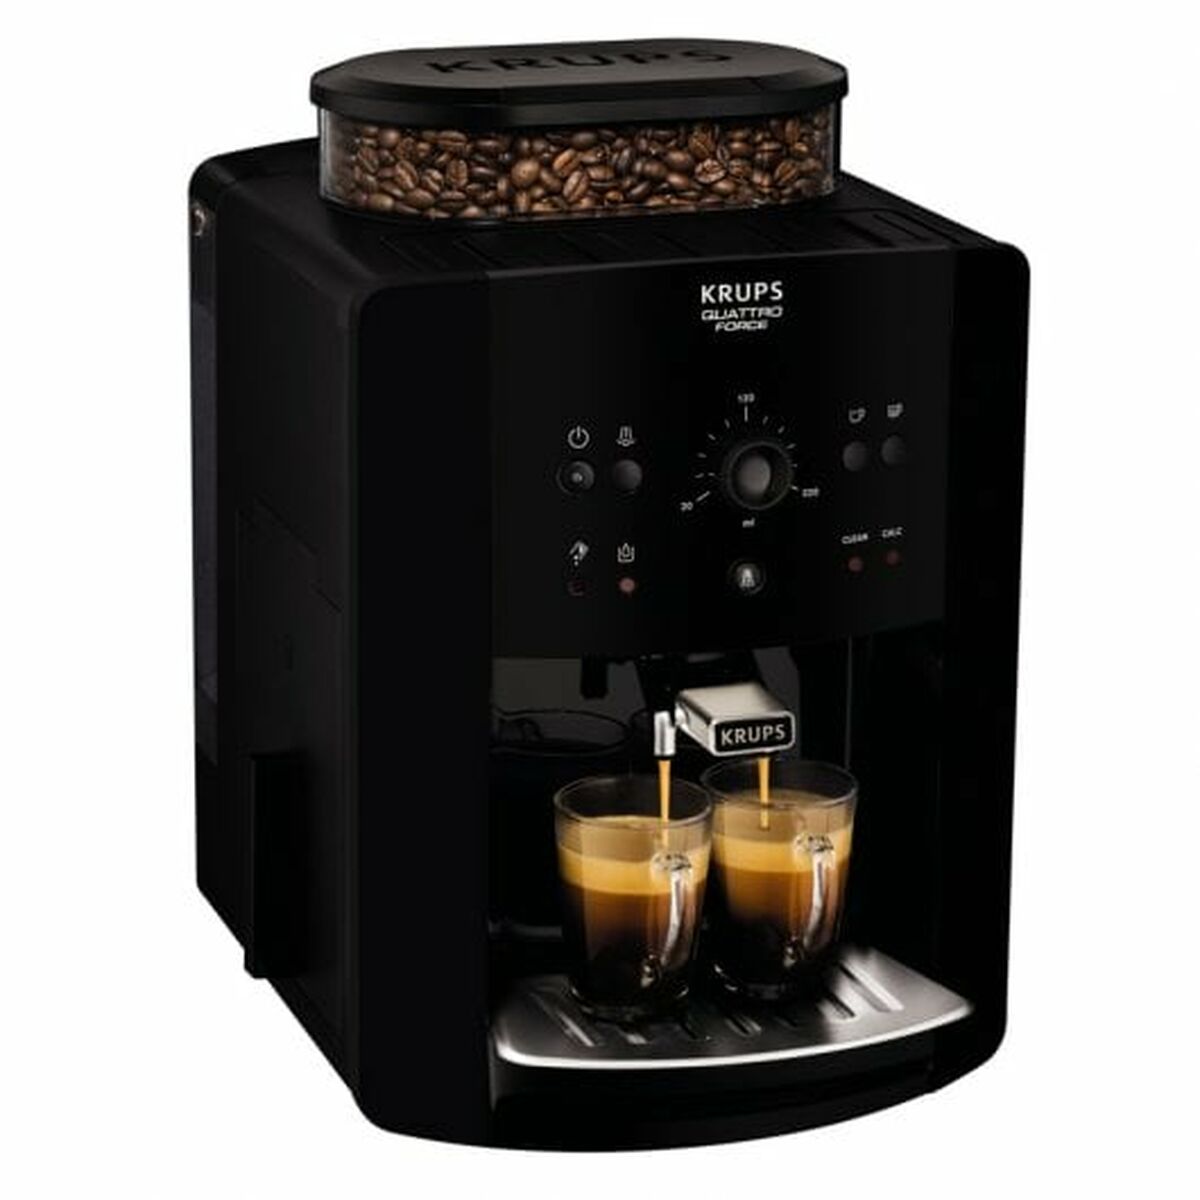 Superautomatische Kaffeemaschine Krups Arabica EA8110 Schwarz 1450 W 15 bar - CA International 